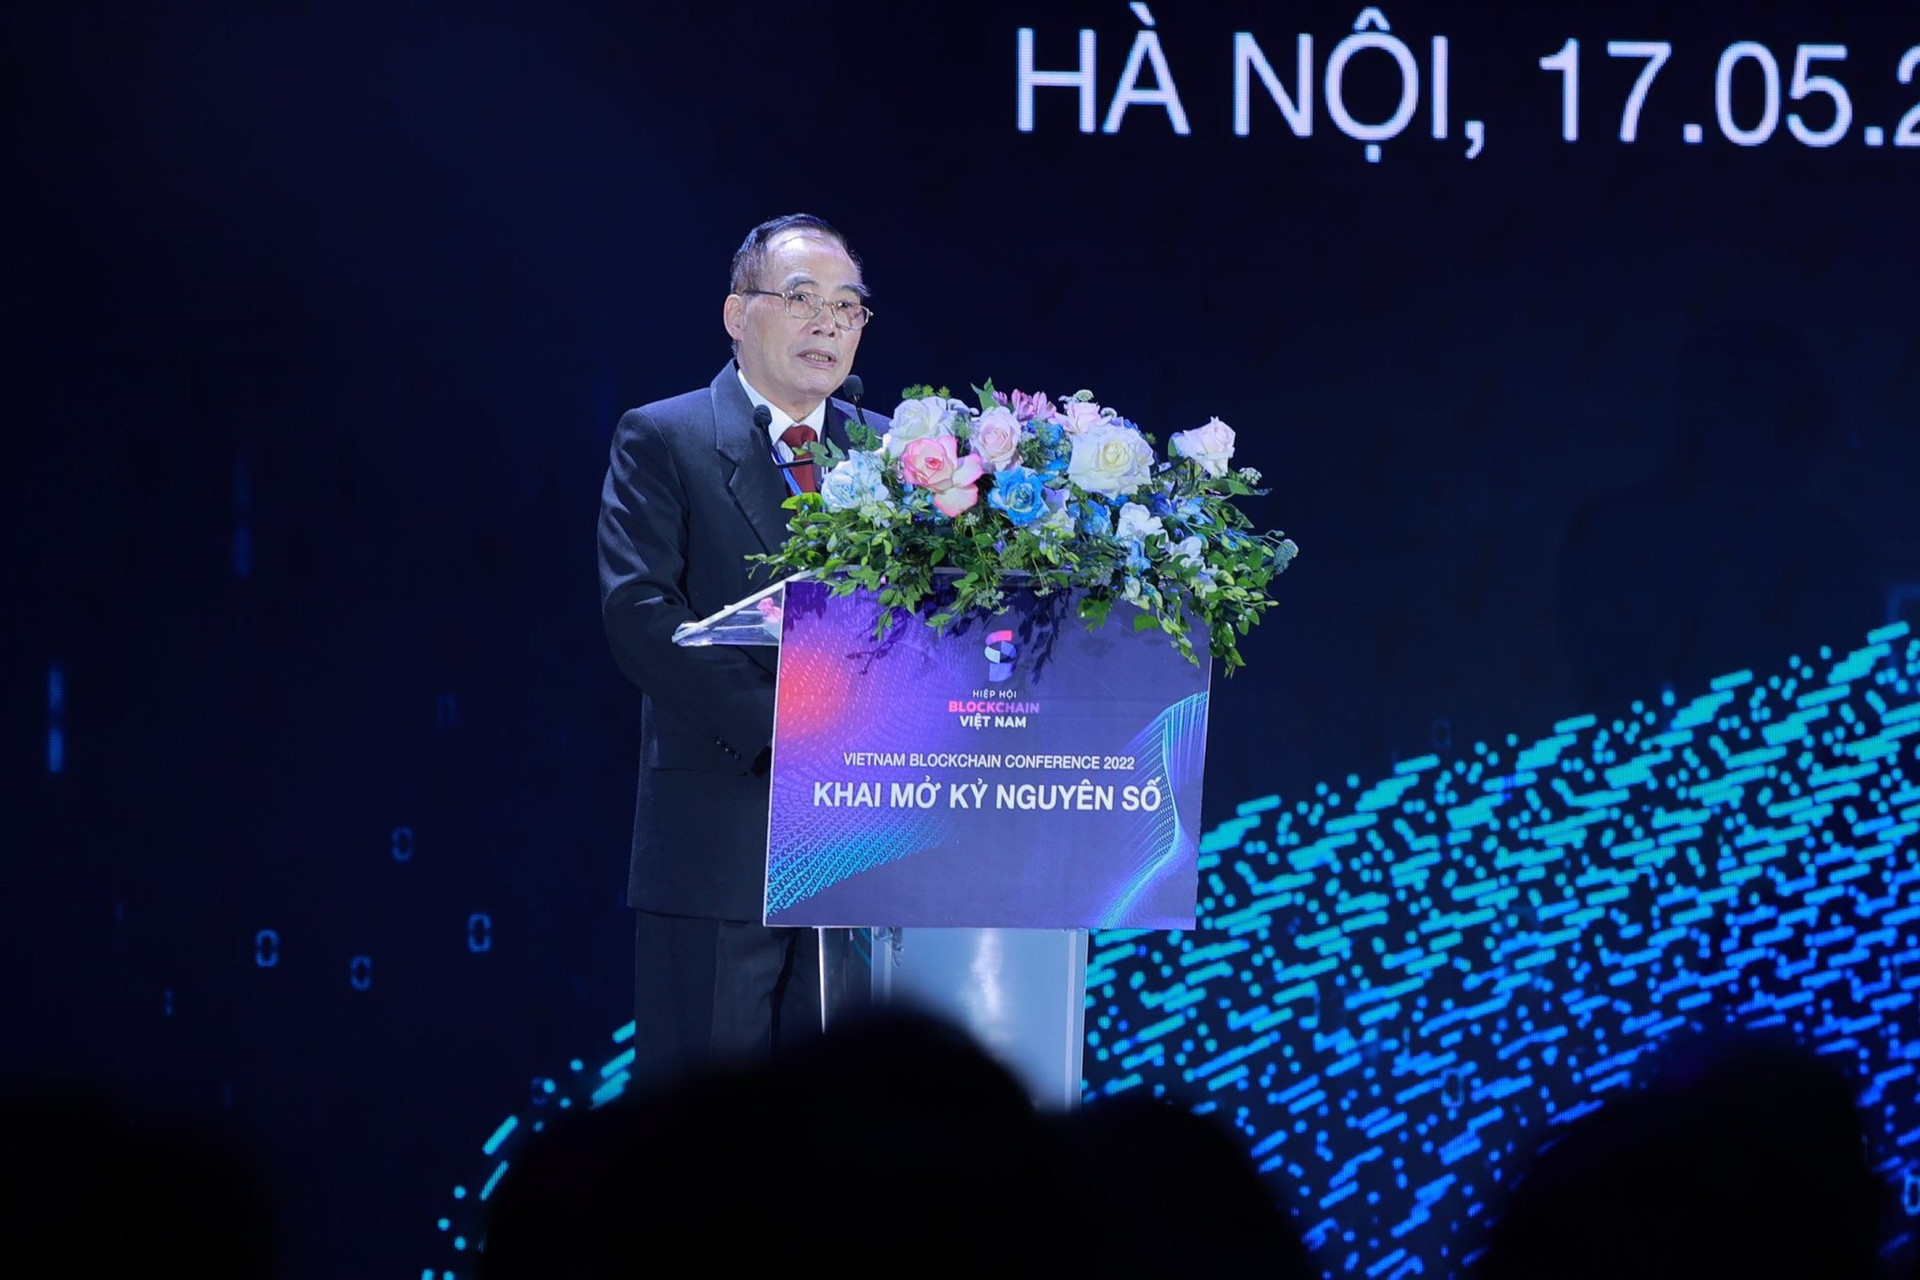 Hiệp hội Blockchain Việt Nam ra đời khai mở nhiều cơ hội mới cho ngành - Ảnh 1.